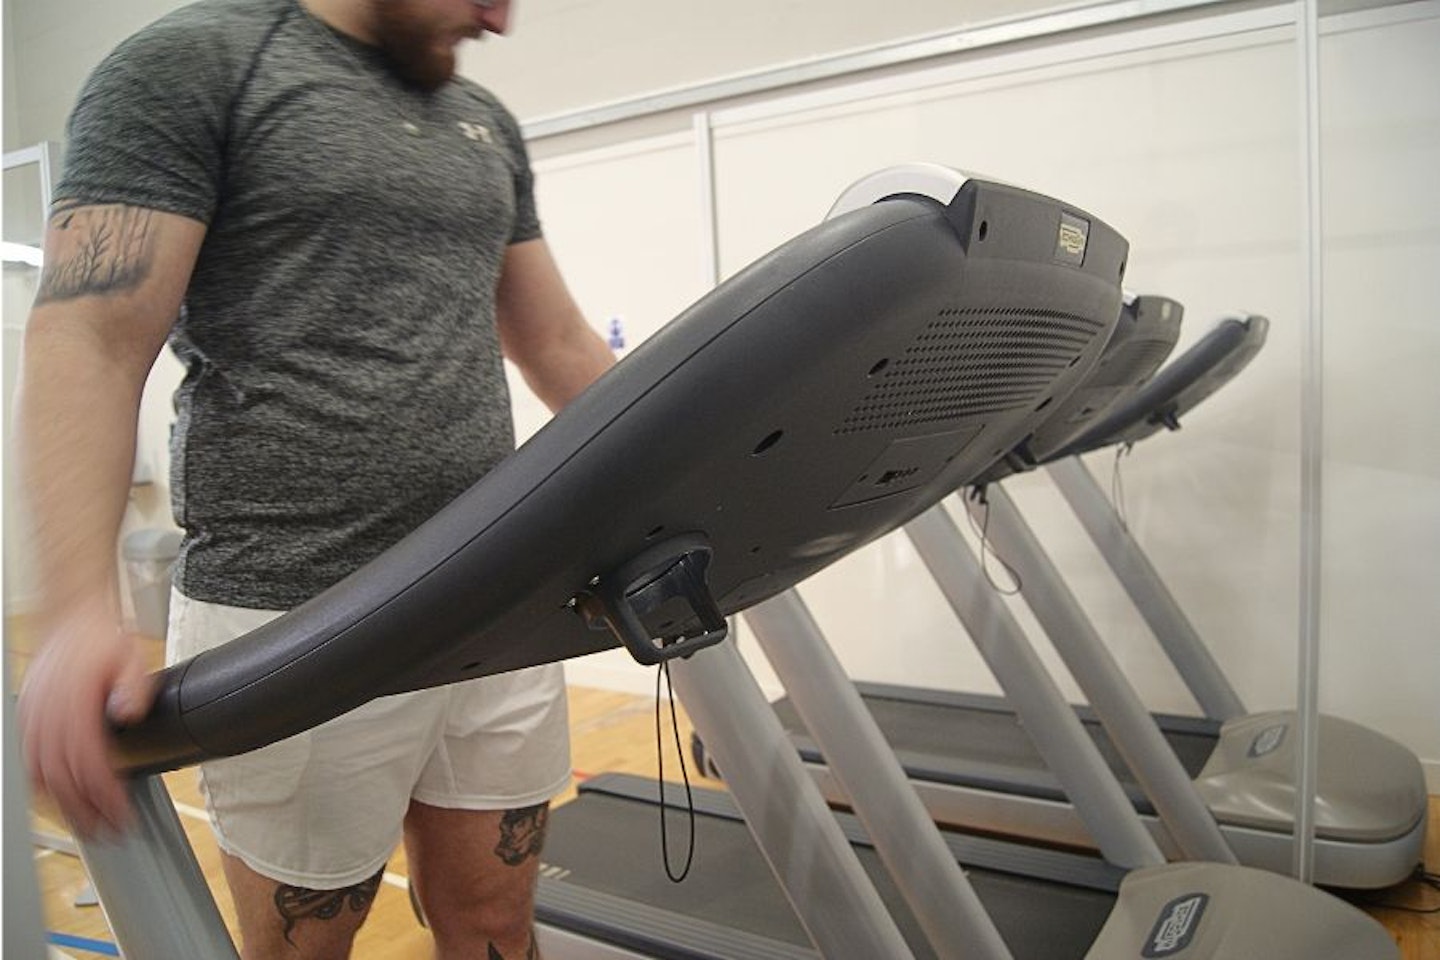 A man dressed in grey using a treadmill in a gym